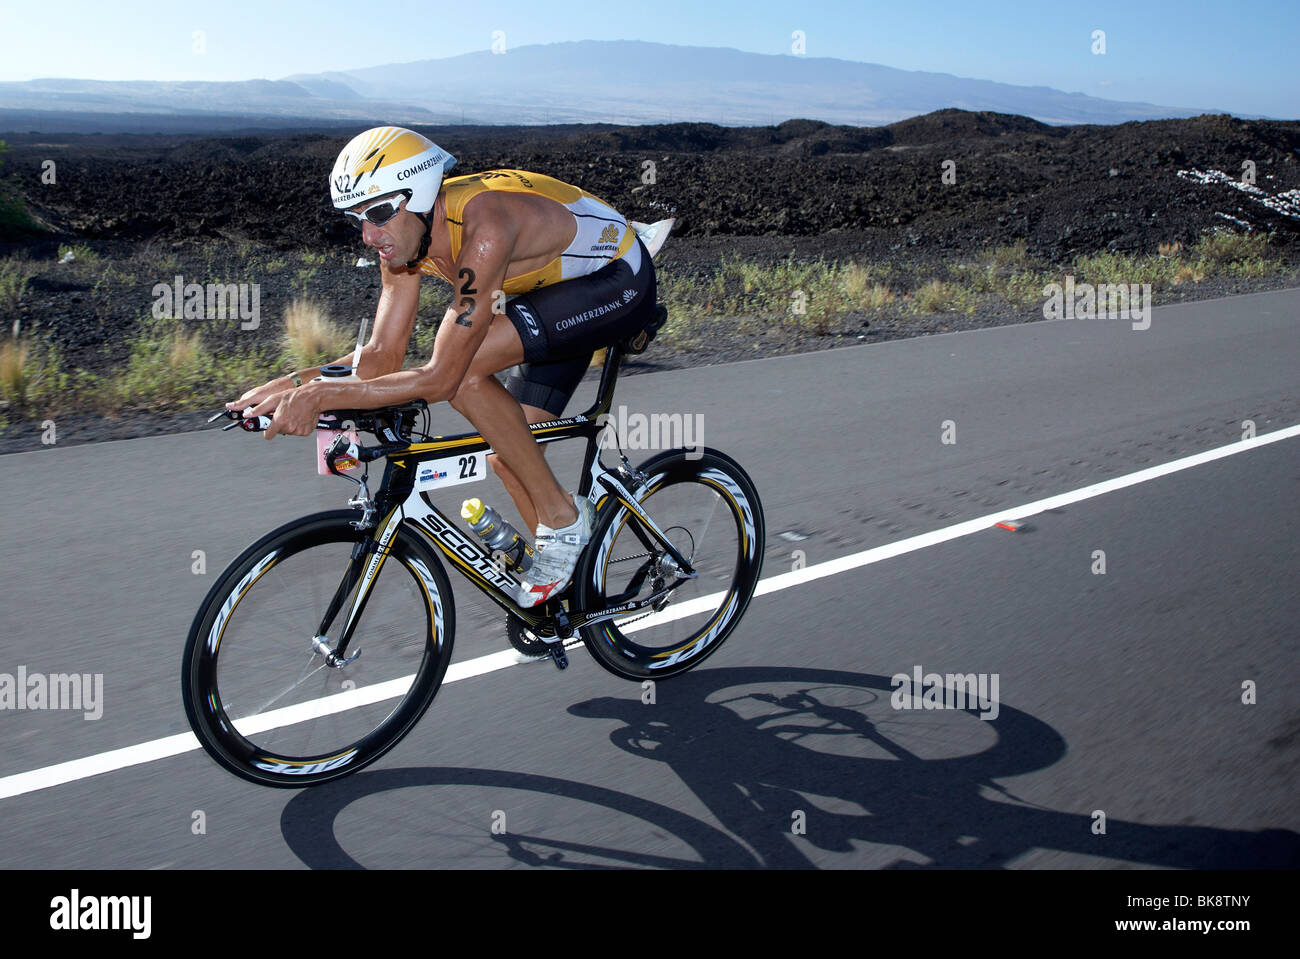 Der belgische Profi-Triathletin Marino Vanhoenacker auf der Radstrecke des Ironman Triathlon World Championship in Kona, Haw Stockfoto